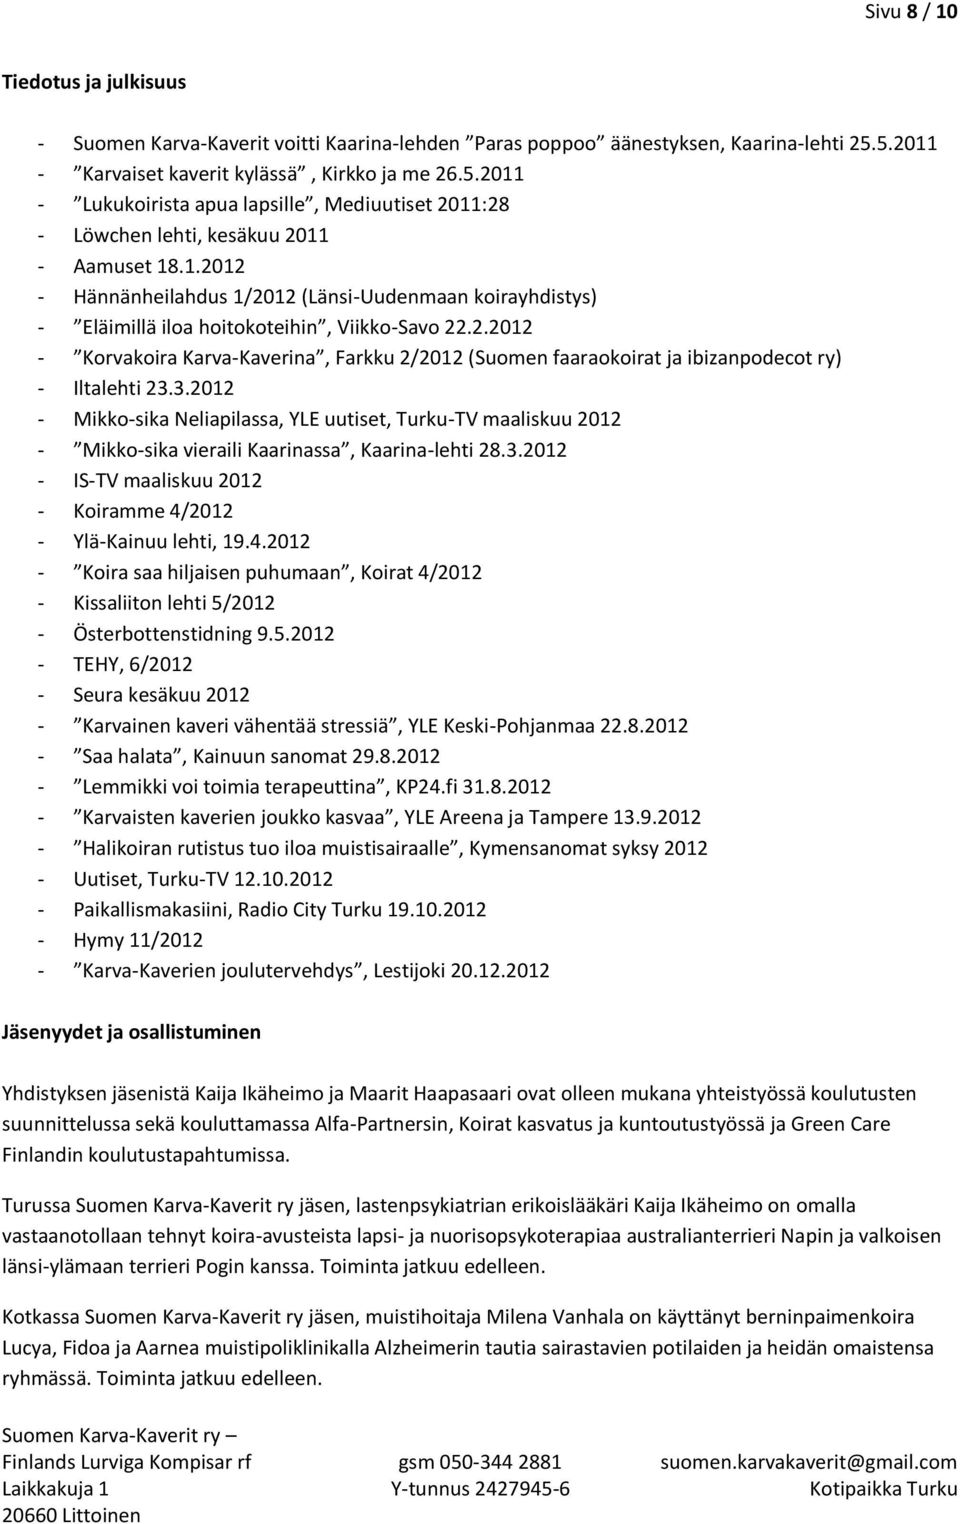 2.2012 - Korvakoira Karva-Kaverina, Farkku 2/2012 (Suomen faaraokoirat ja ibizanpodecot ry) - Iltalehti 23.